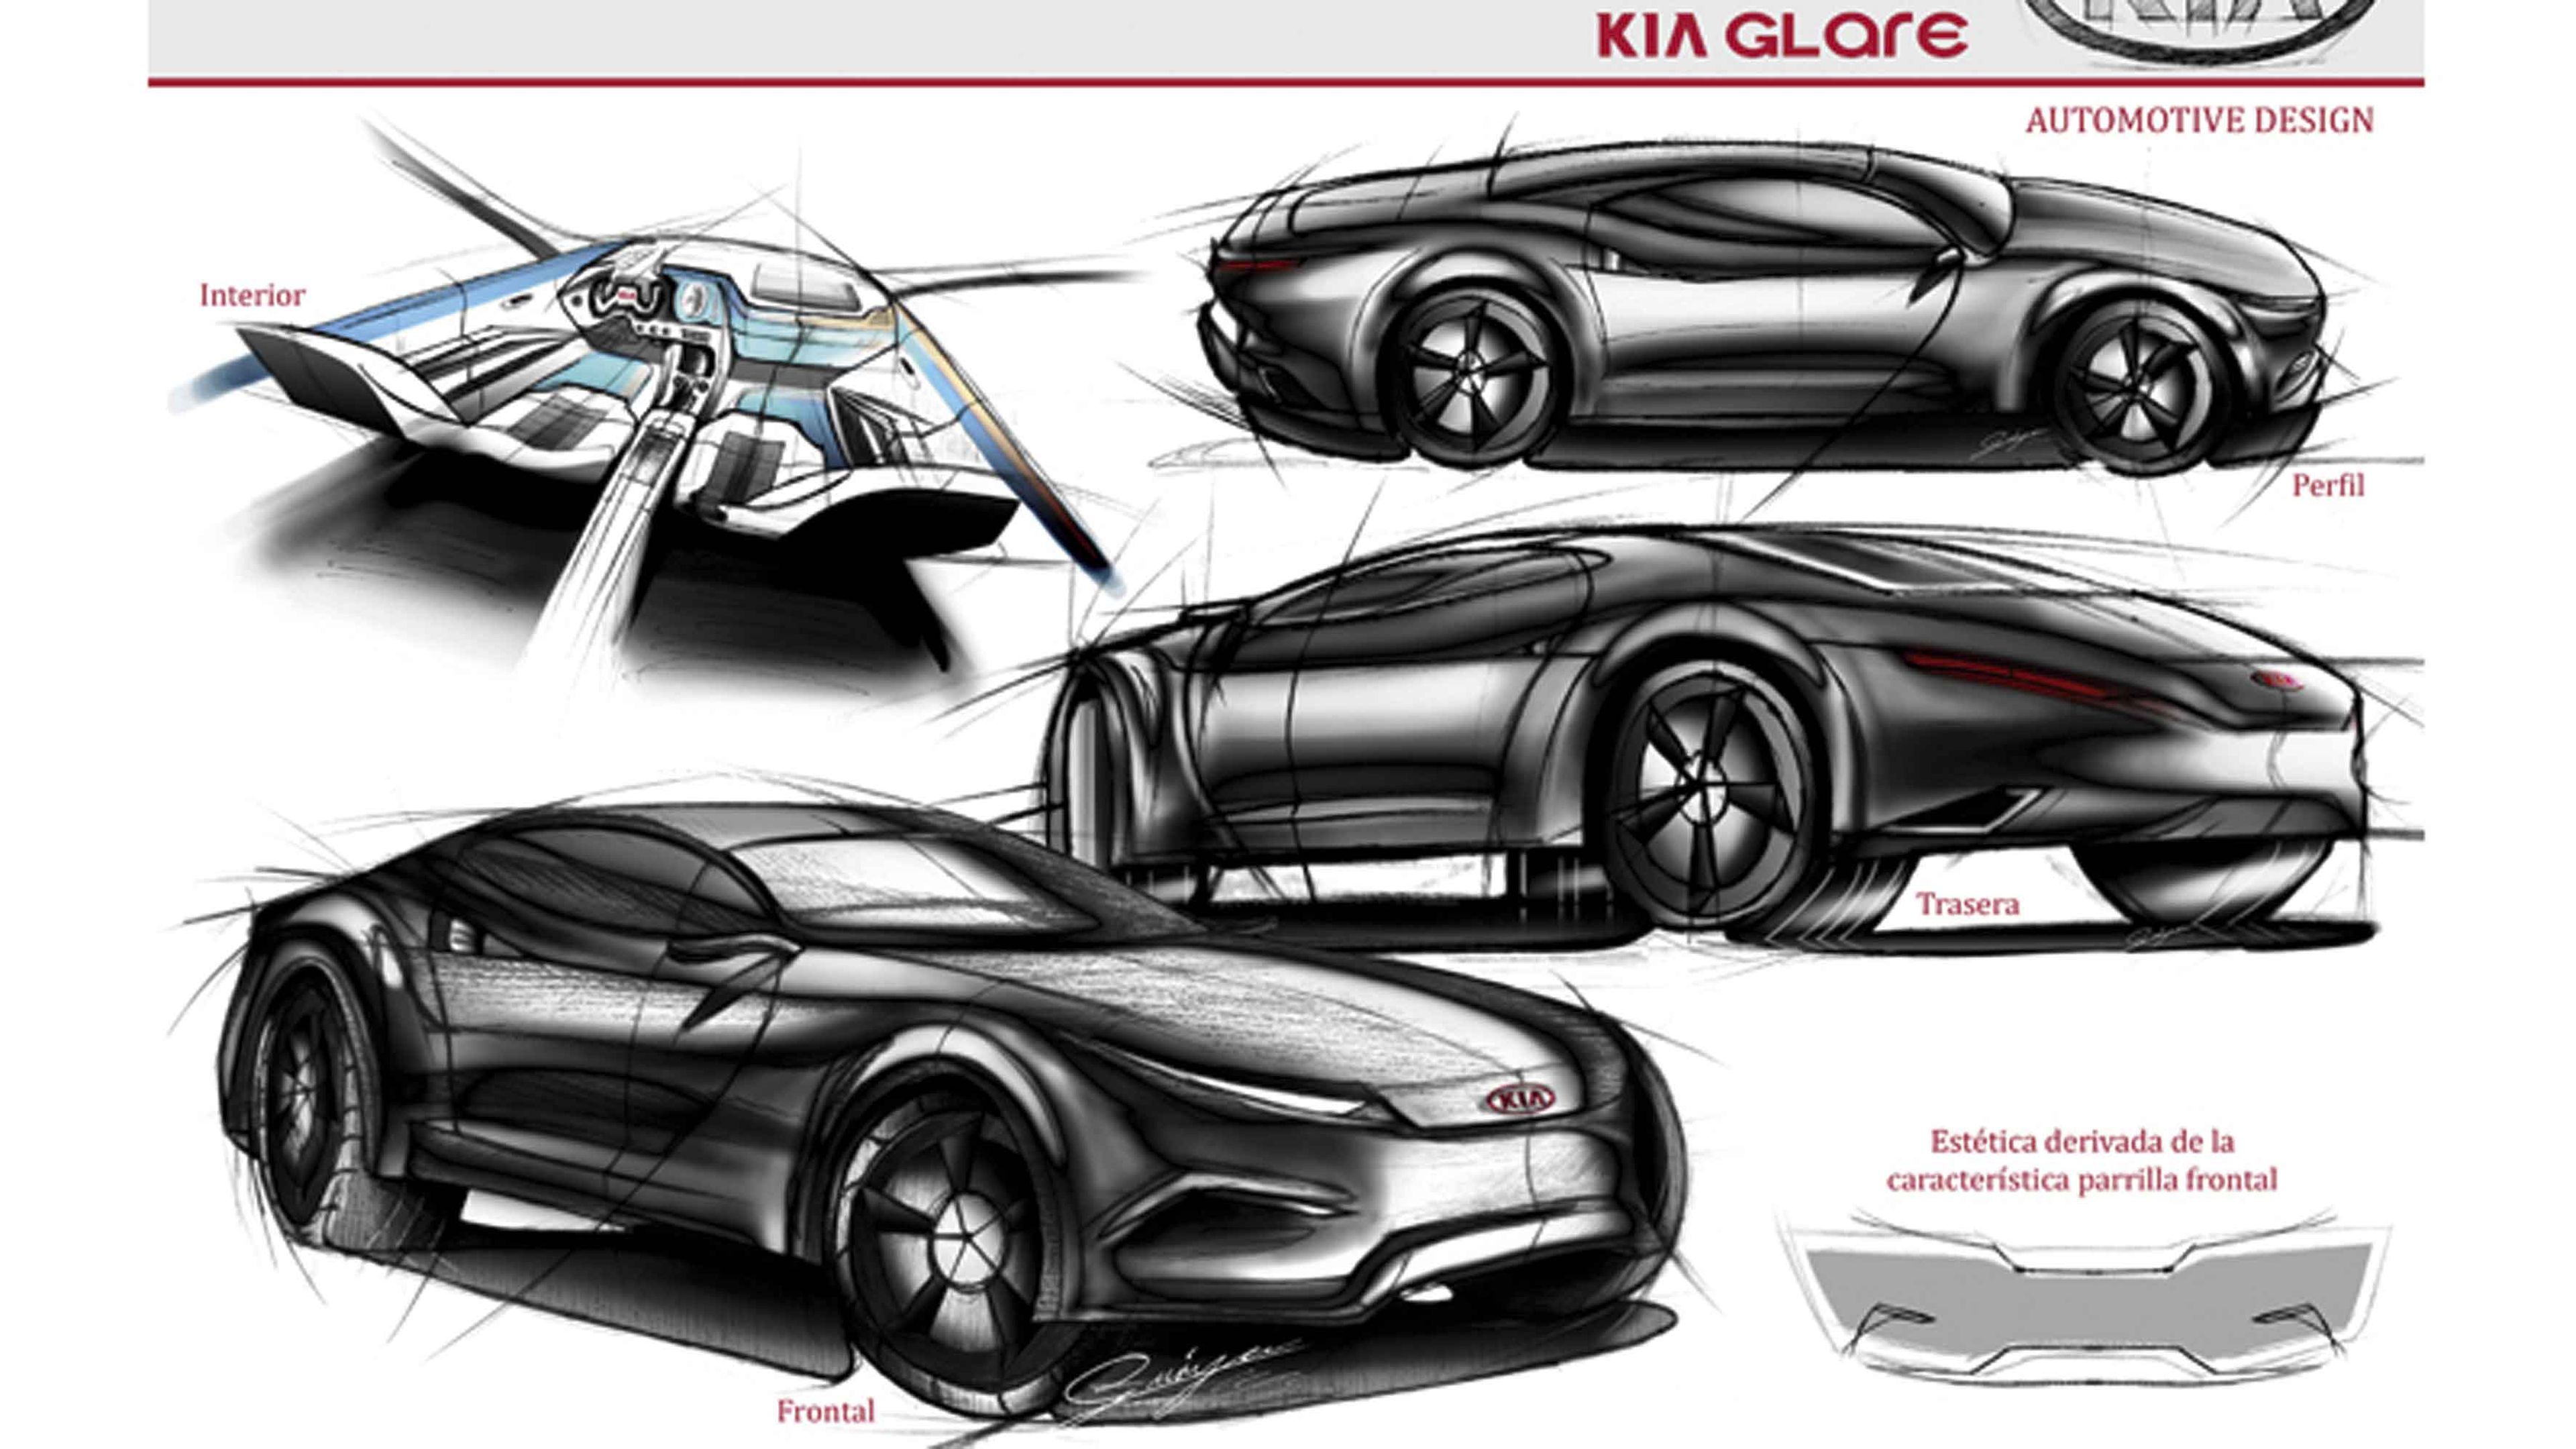 concurso de Diseño Kia-Auto Bild